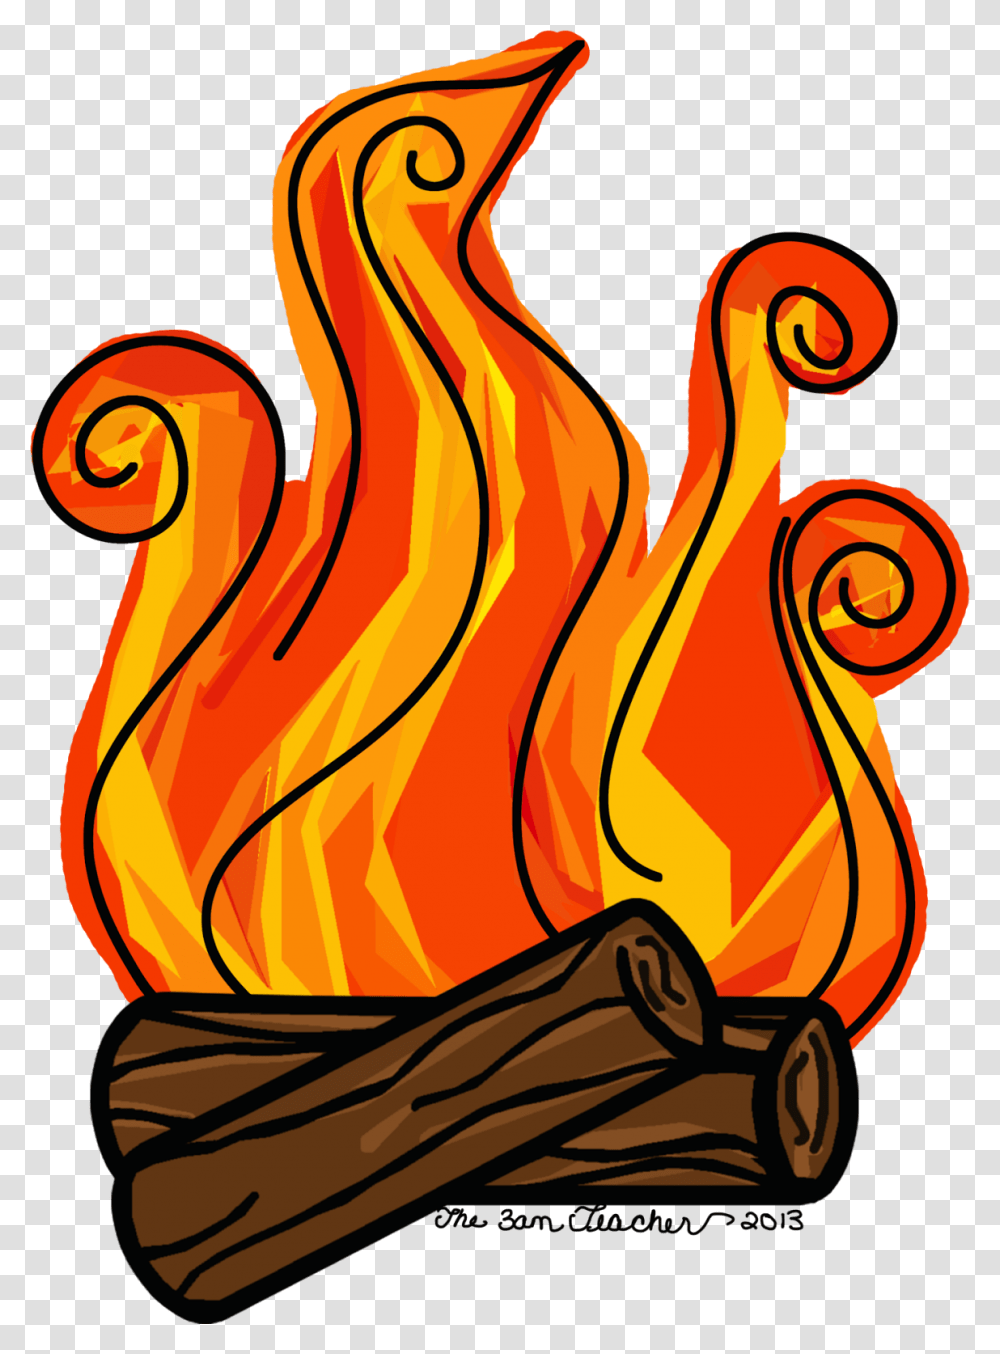 The Teacher December, Fire, Flame, Bonfire Transparent Png